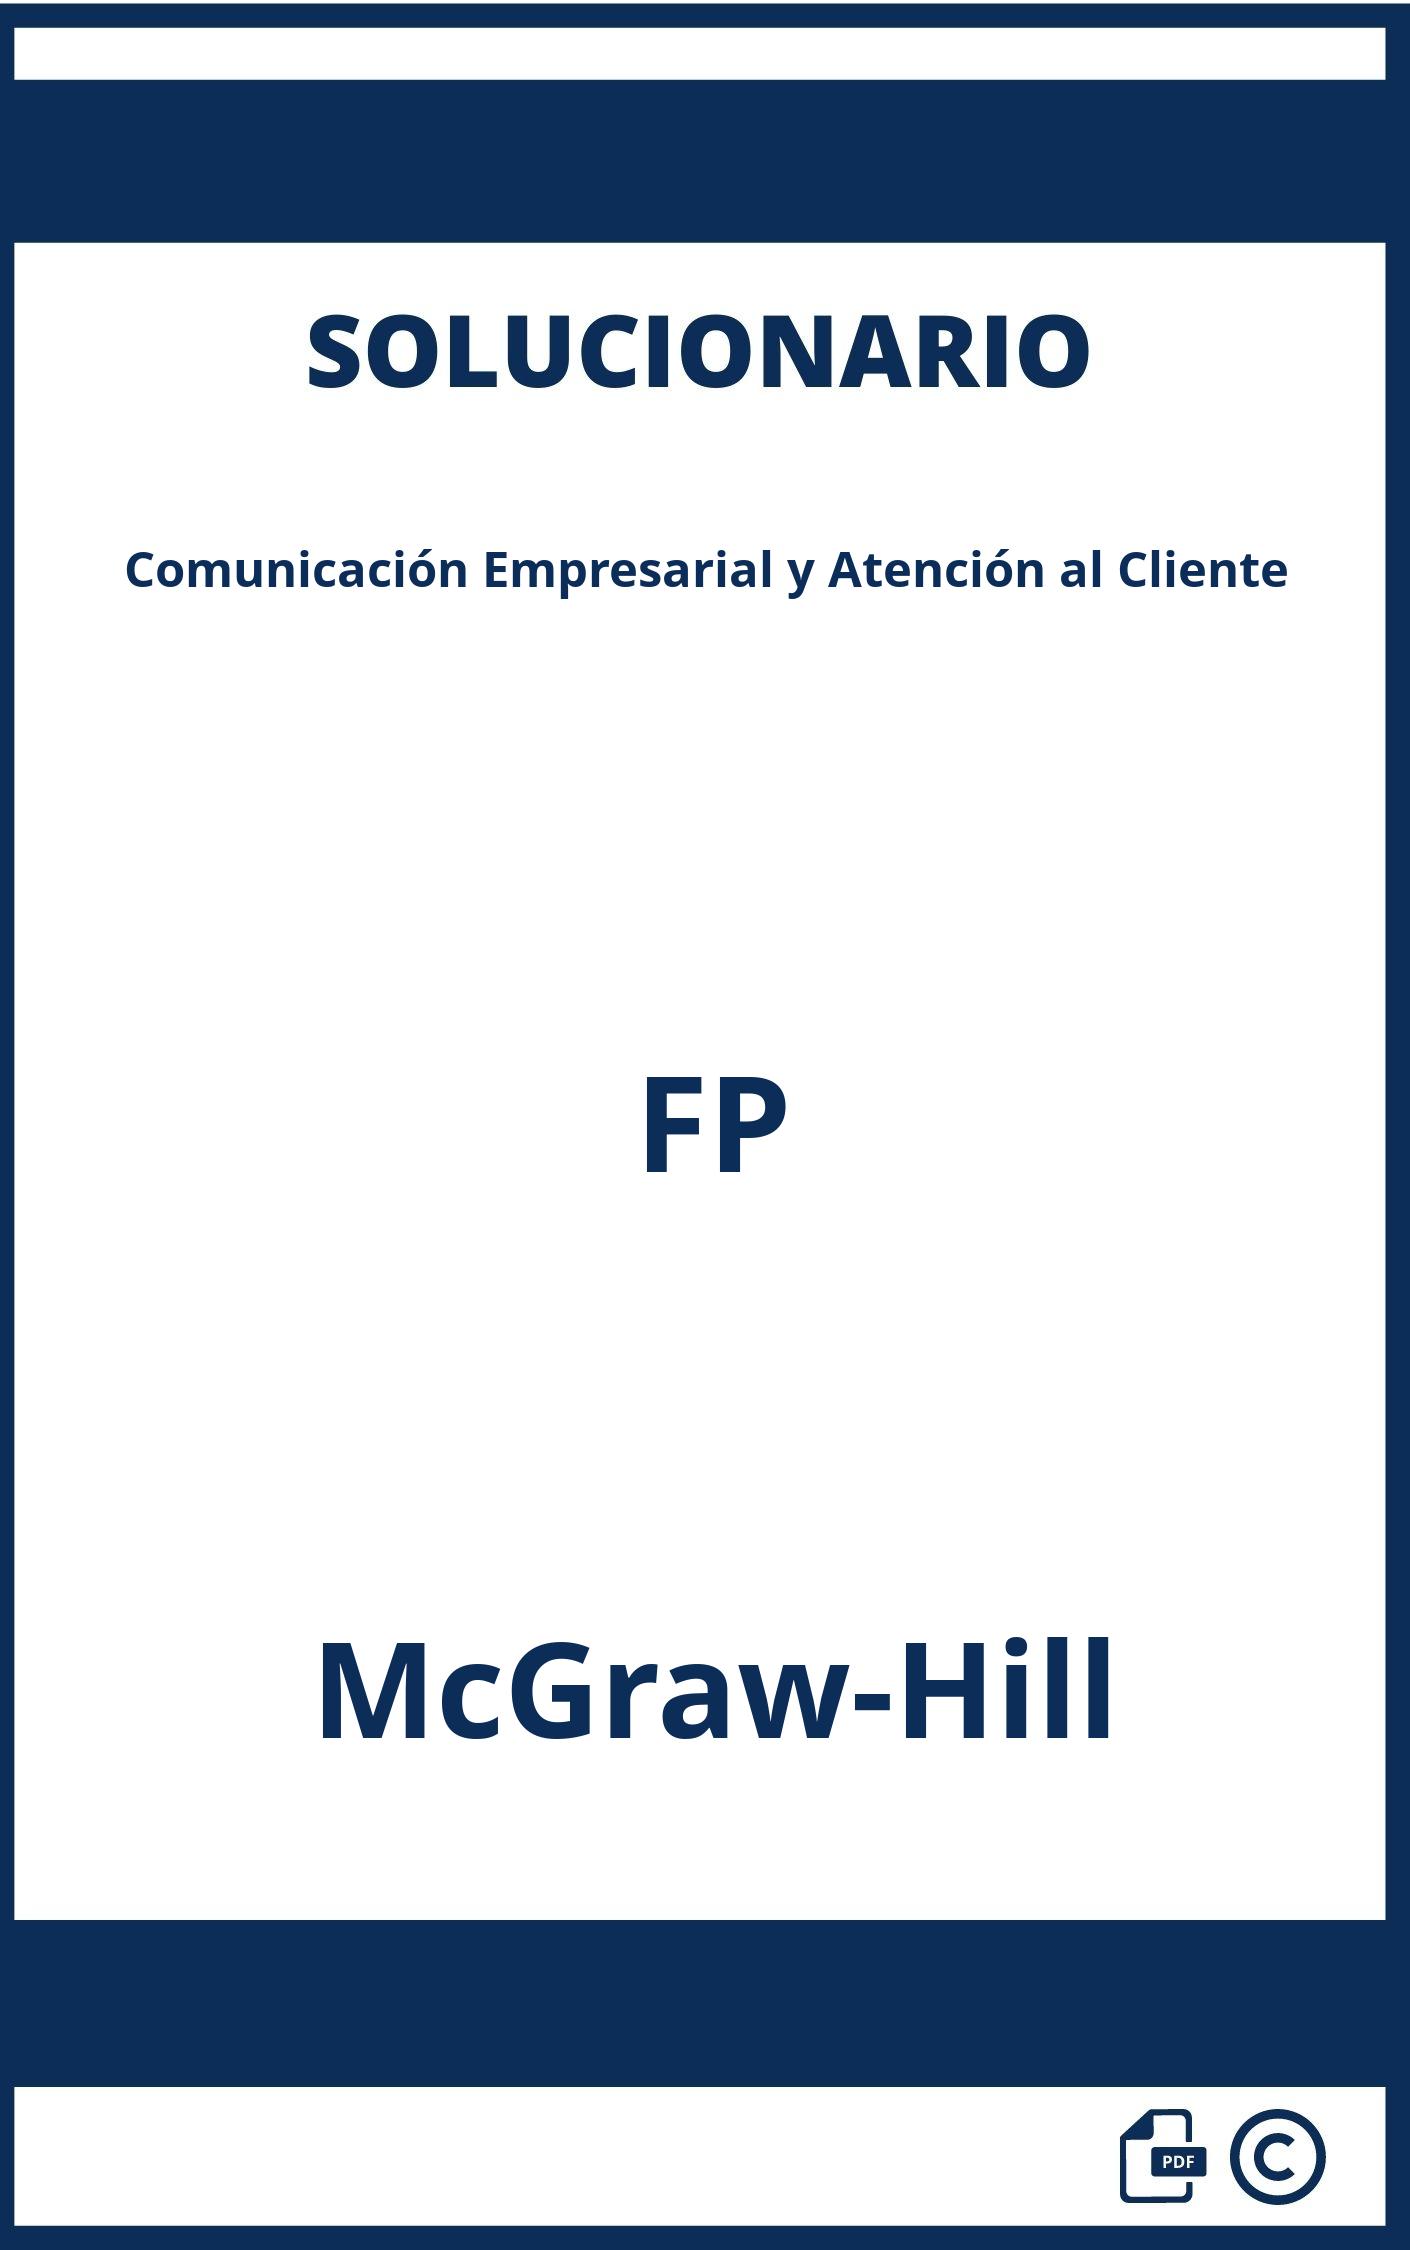 Solucionario Comunicación Empresarial y Atención al Cliente FP McGraw-Hill